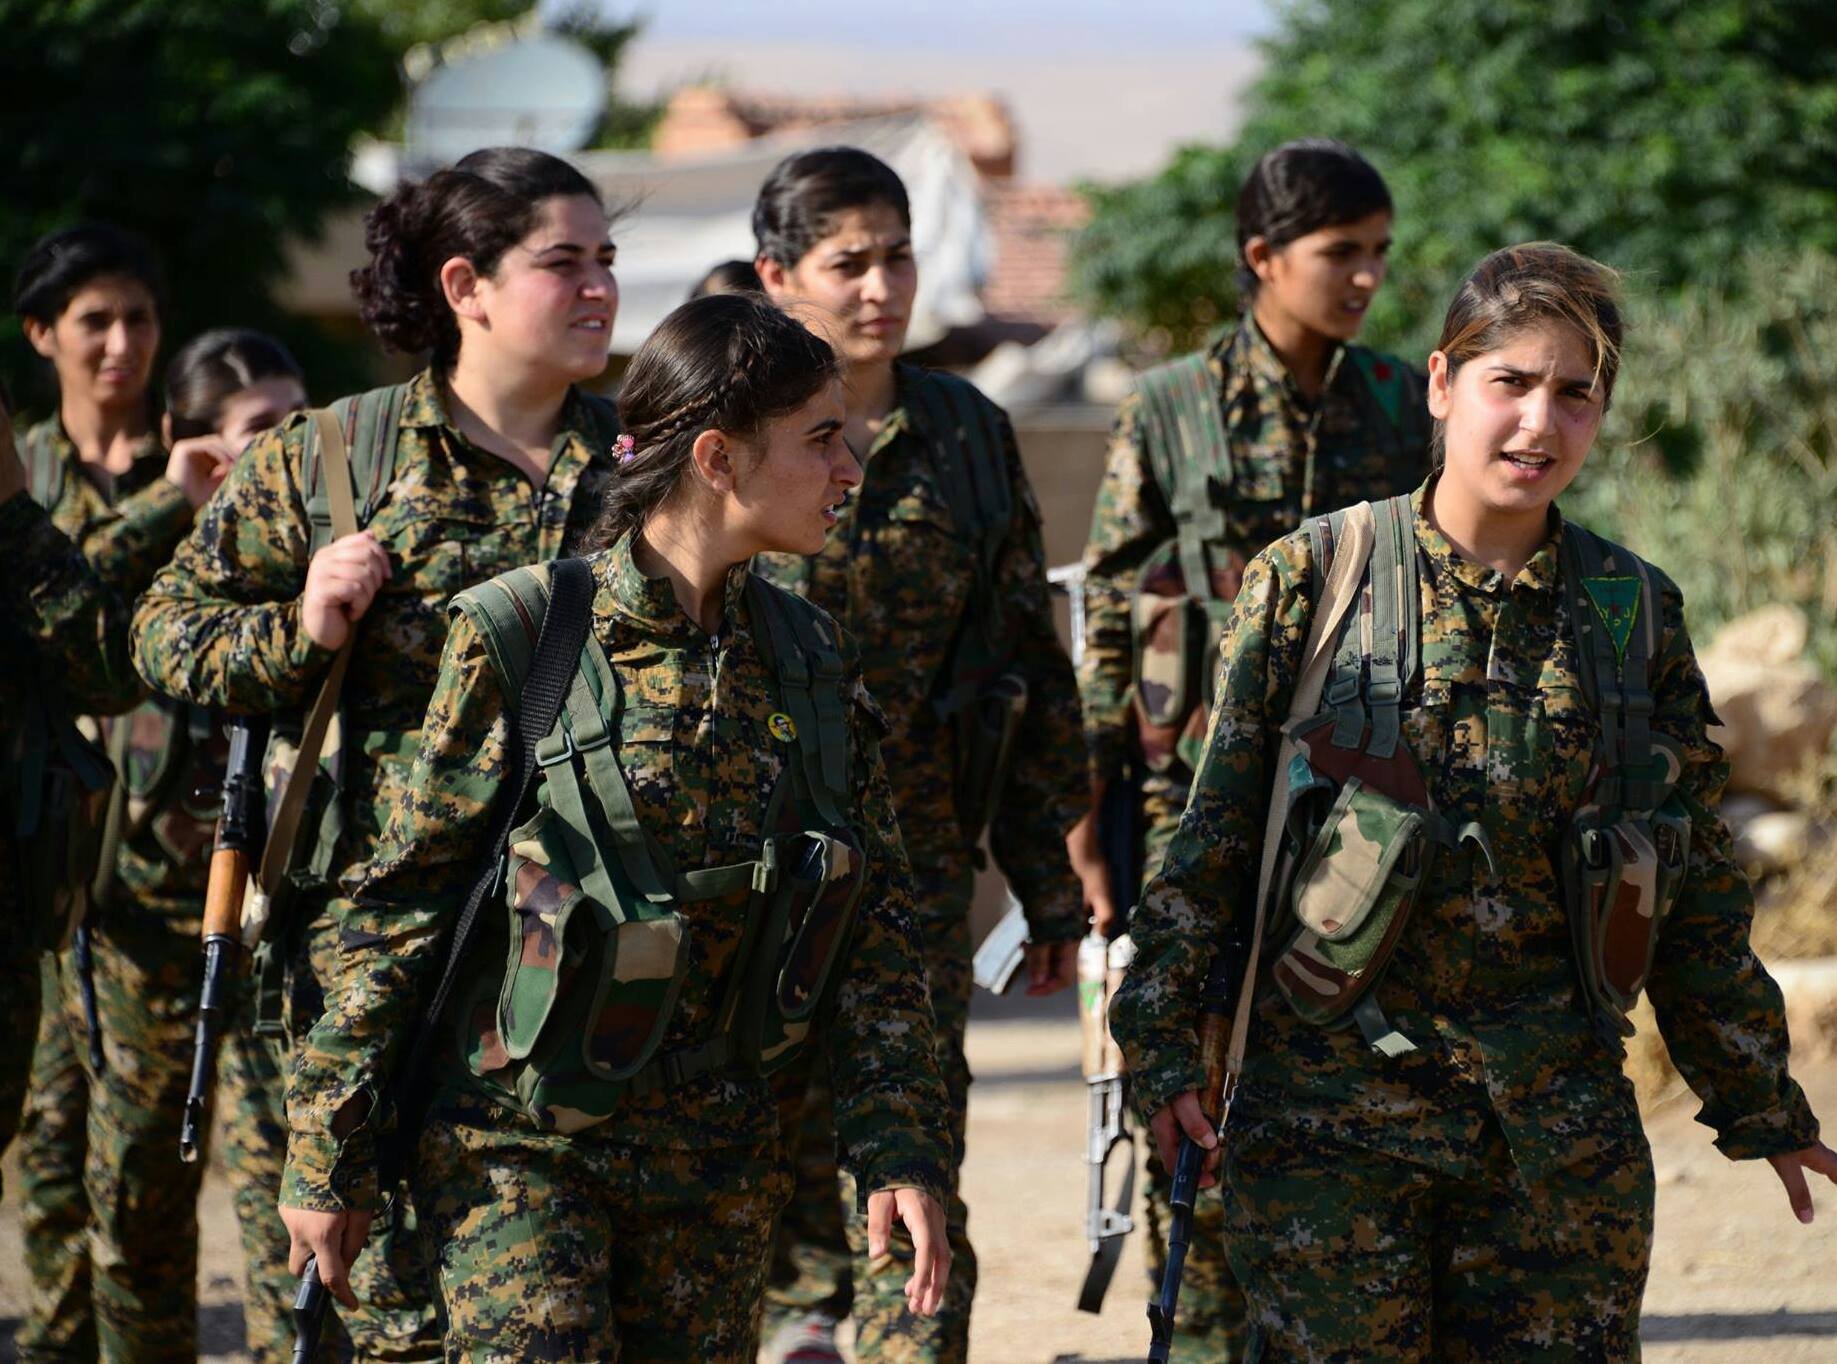 المرأة المقاتلة في صفوف وحدات حماية الشعب الكرديّة بين الواقع والأسطورة